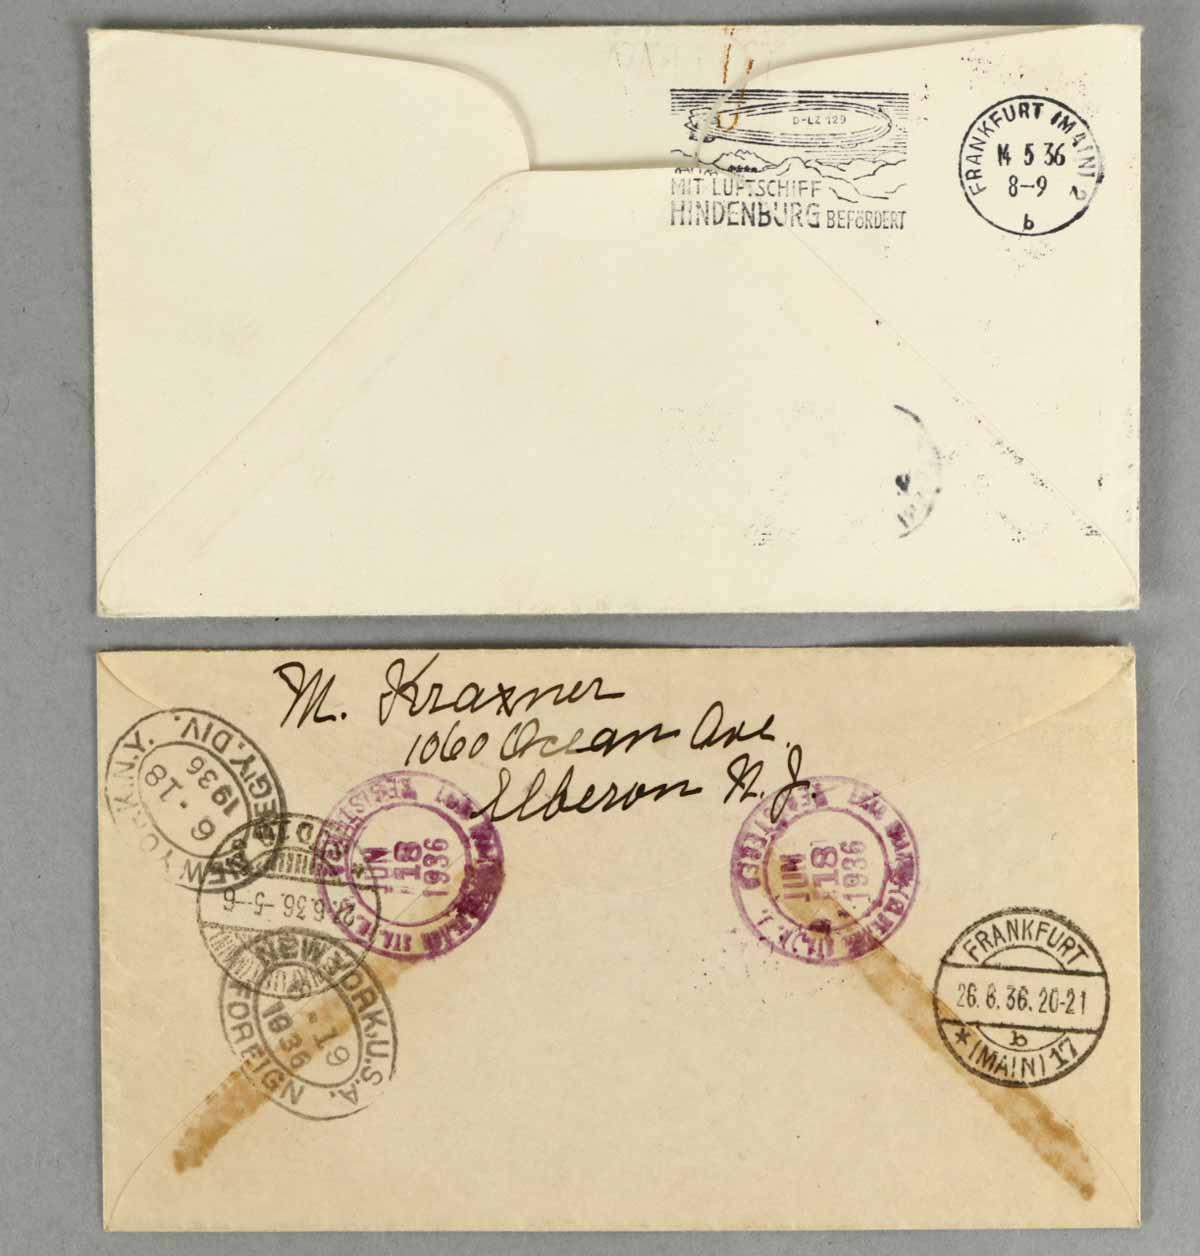 Airship Hindenburg Air Mail Envelopes, 1936